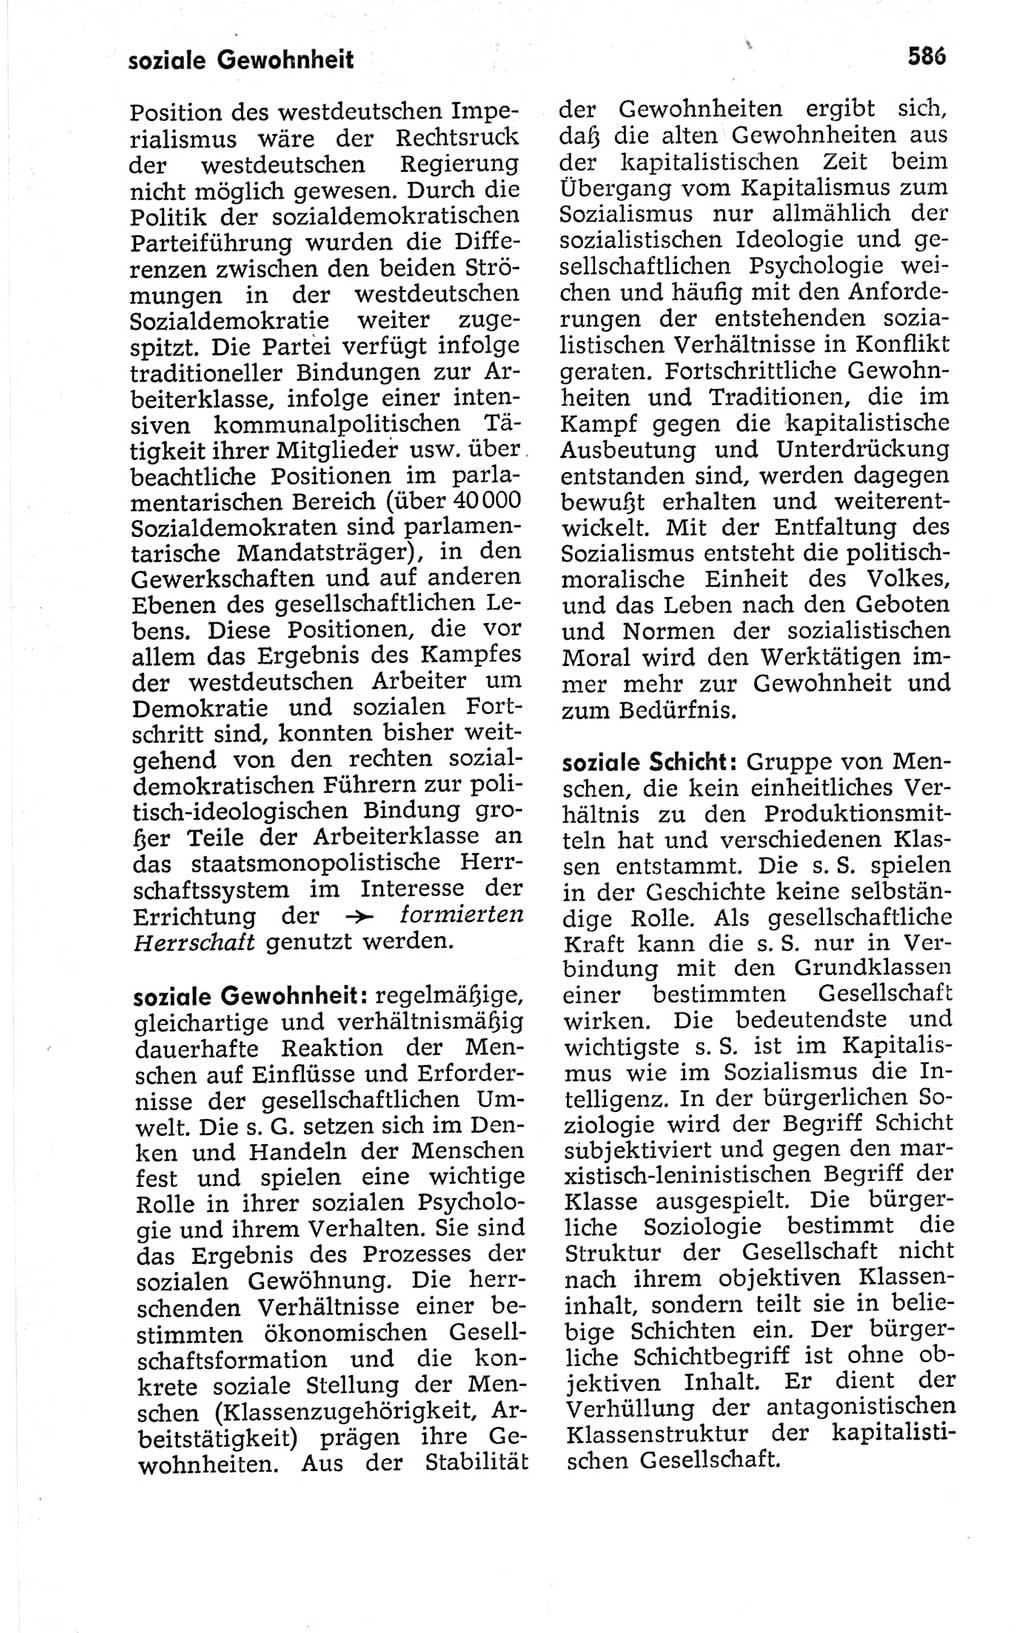 Kleines politisches Wörterbuch [Deutsche Demokratische Republik (DDR)] 1967, Seite 586 (Kl. pol. Wb. DDR 1967, S. 586)